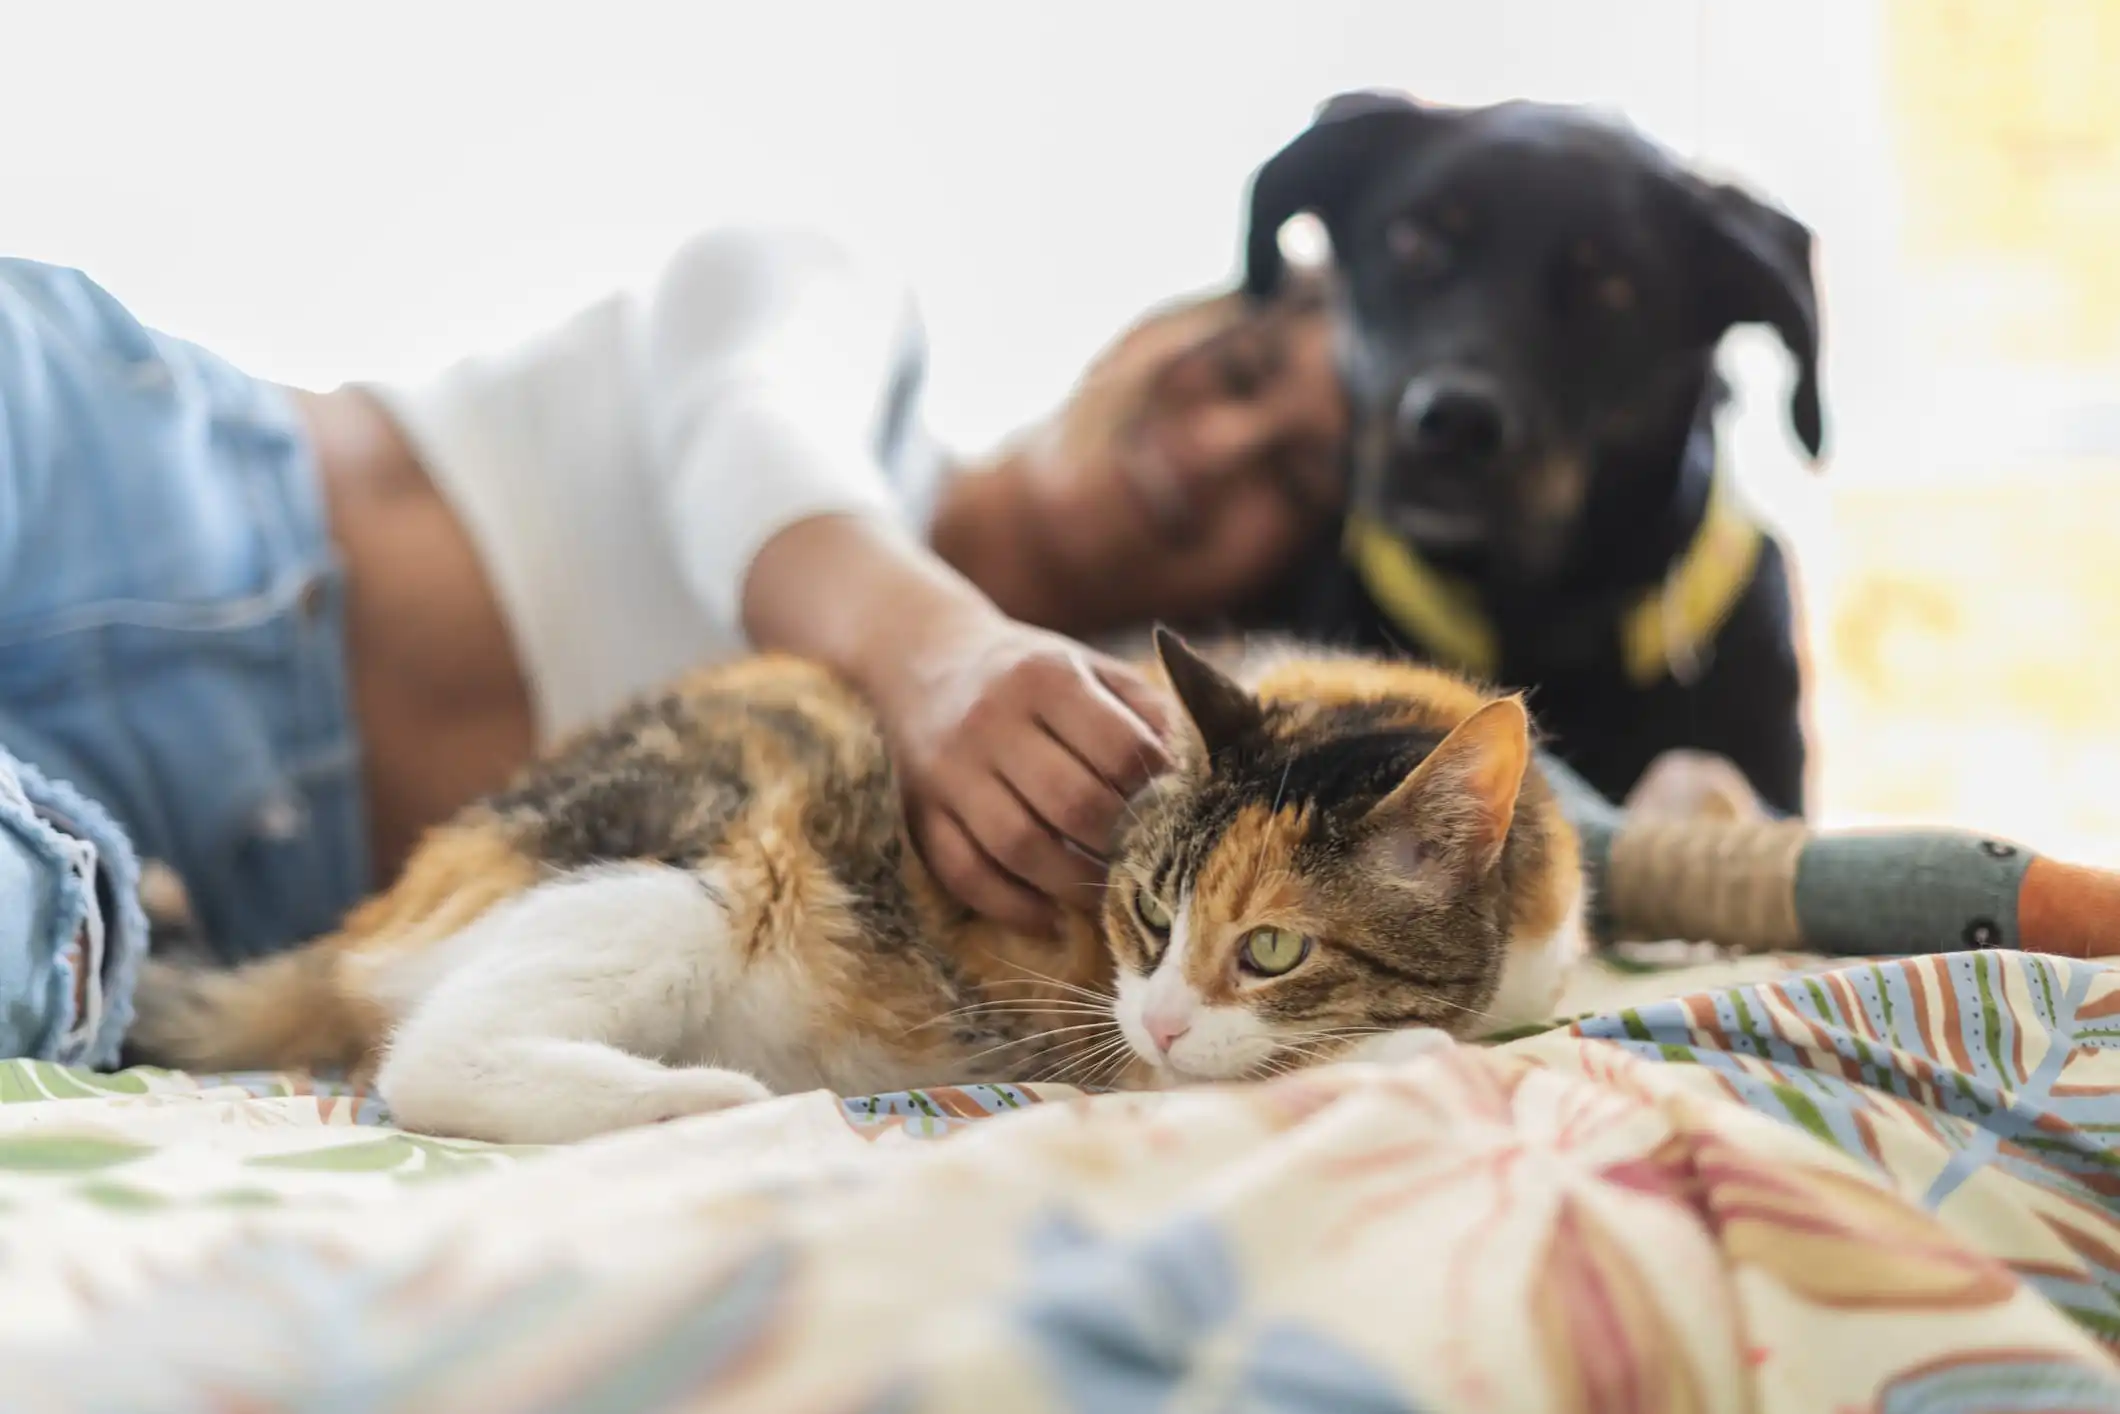 Imagem de um gato tigrado de cor amarela, branca e preta e um cachorro de pelo preto recebendo carinho de sua tutora.